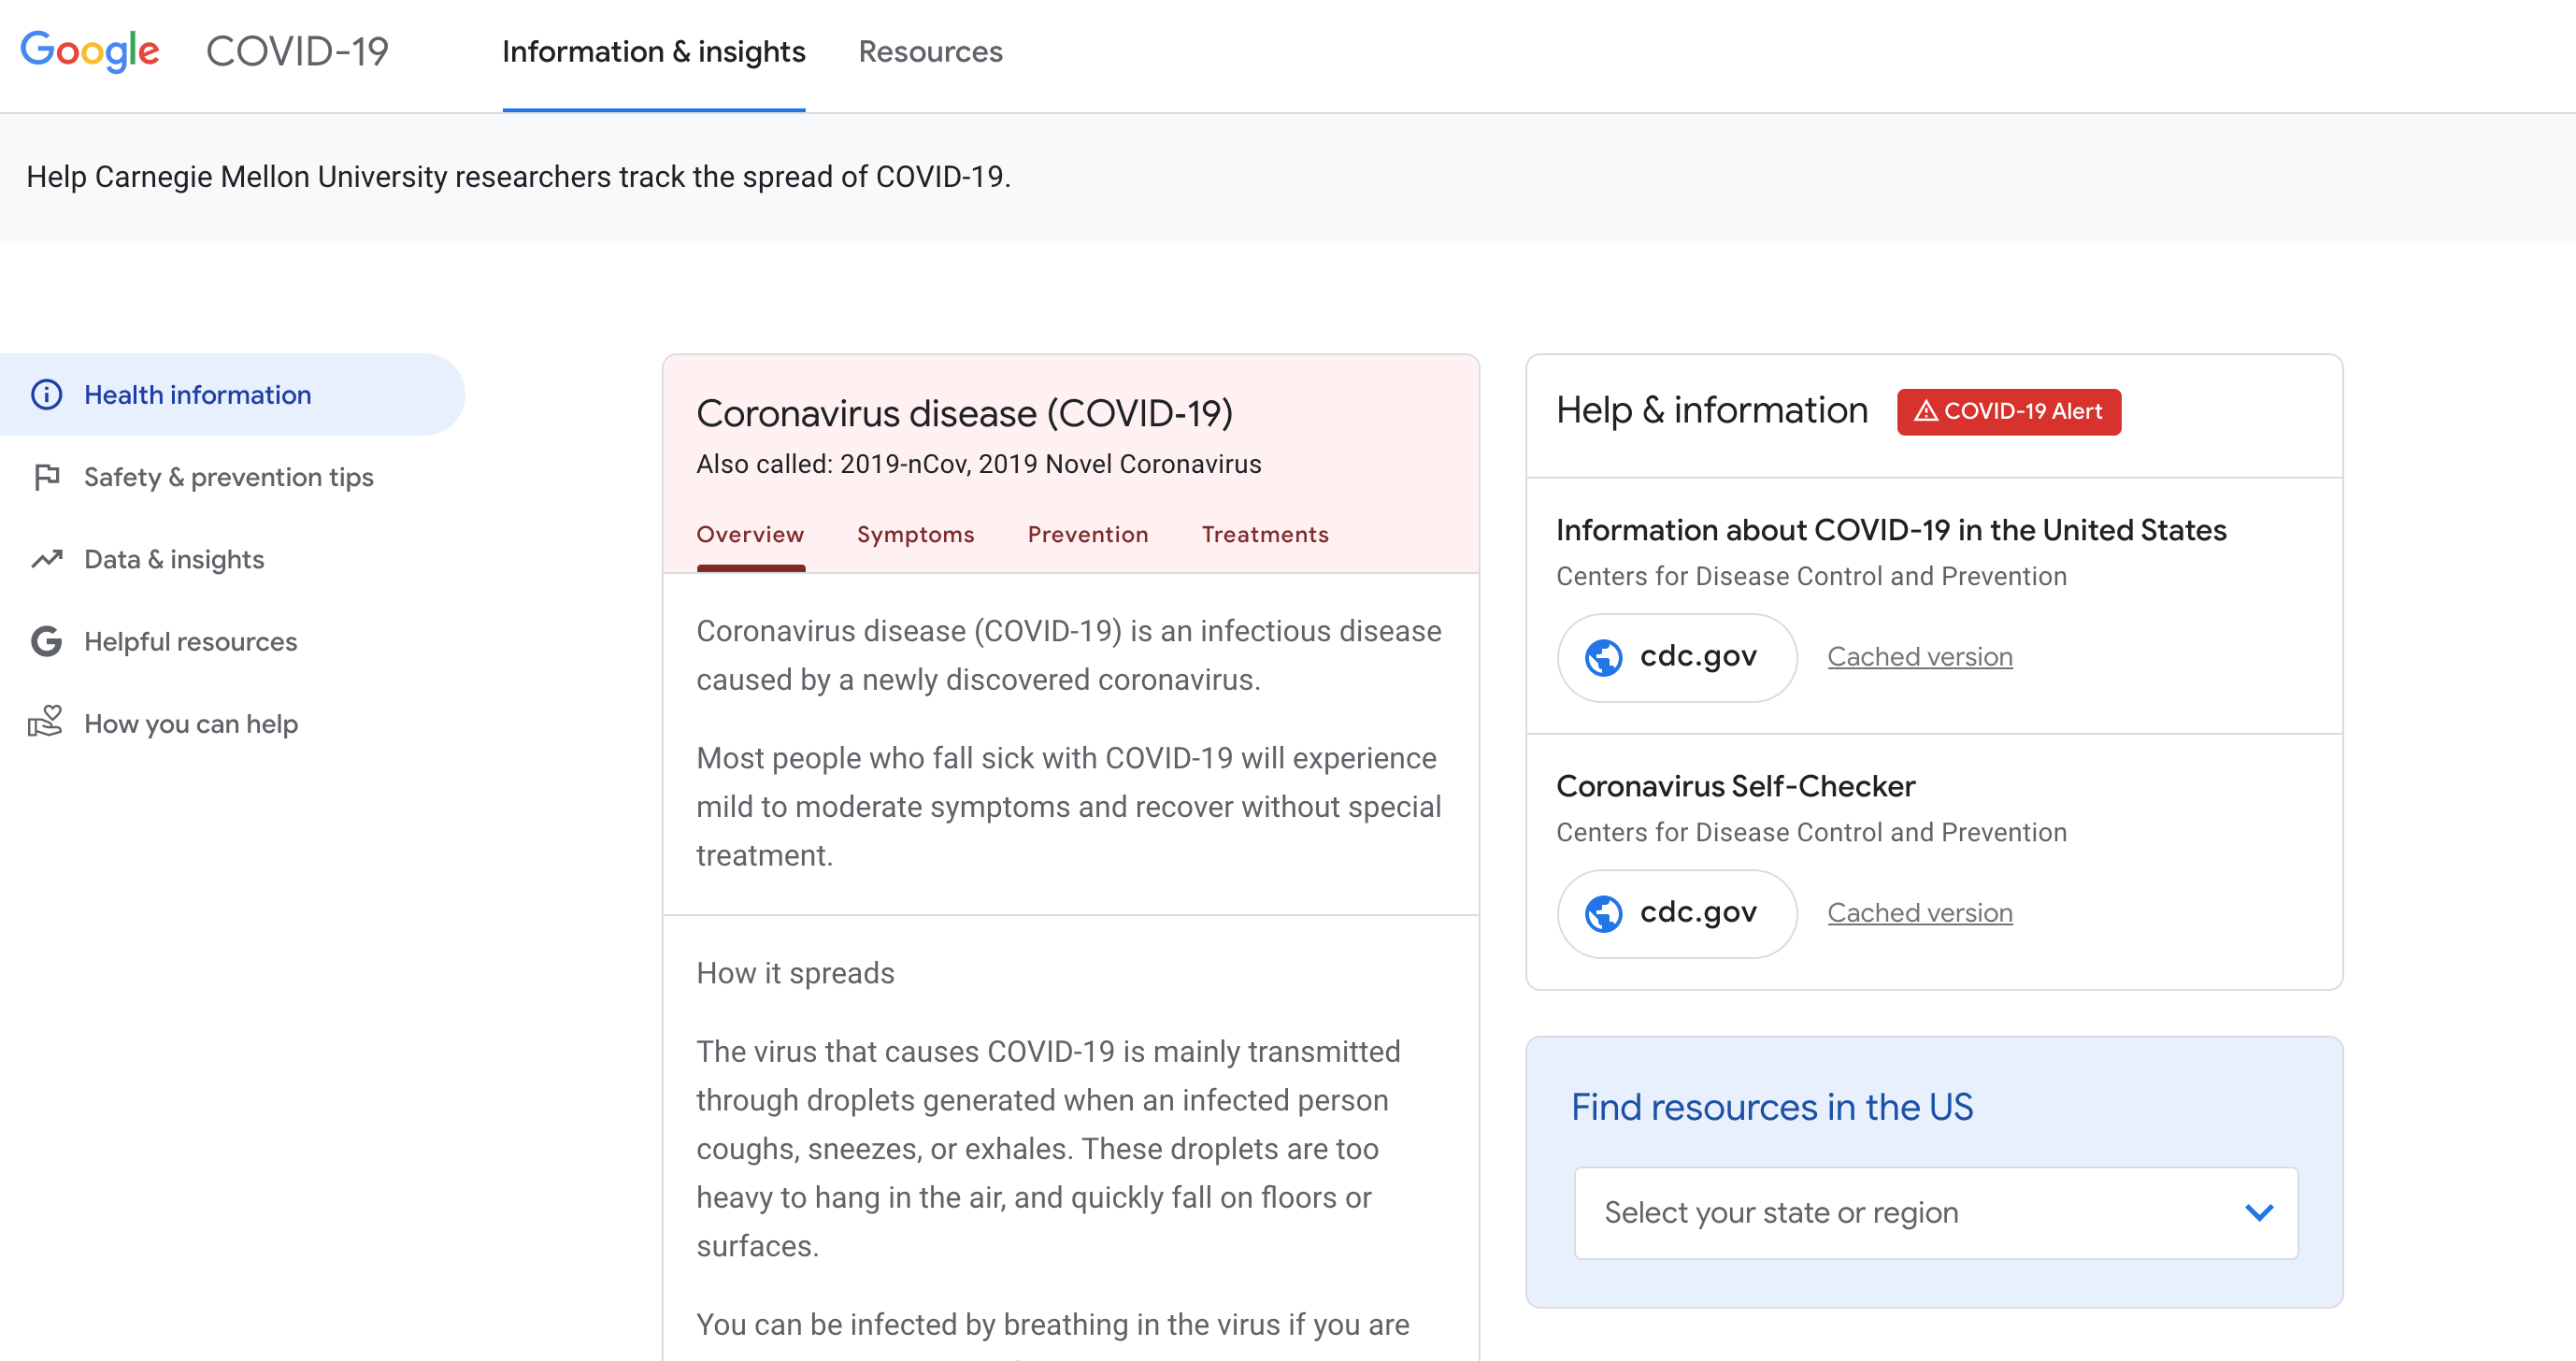 Google's global information portal for Coronavirus